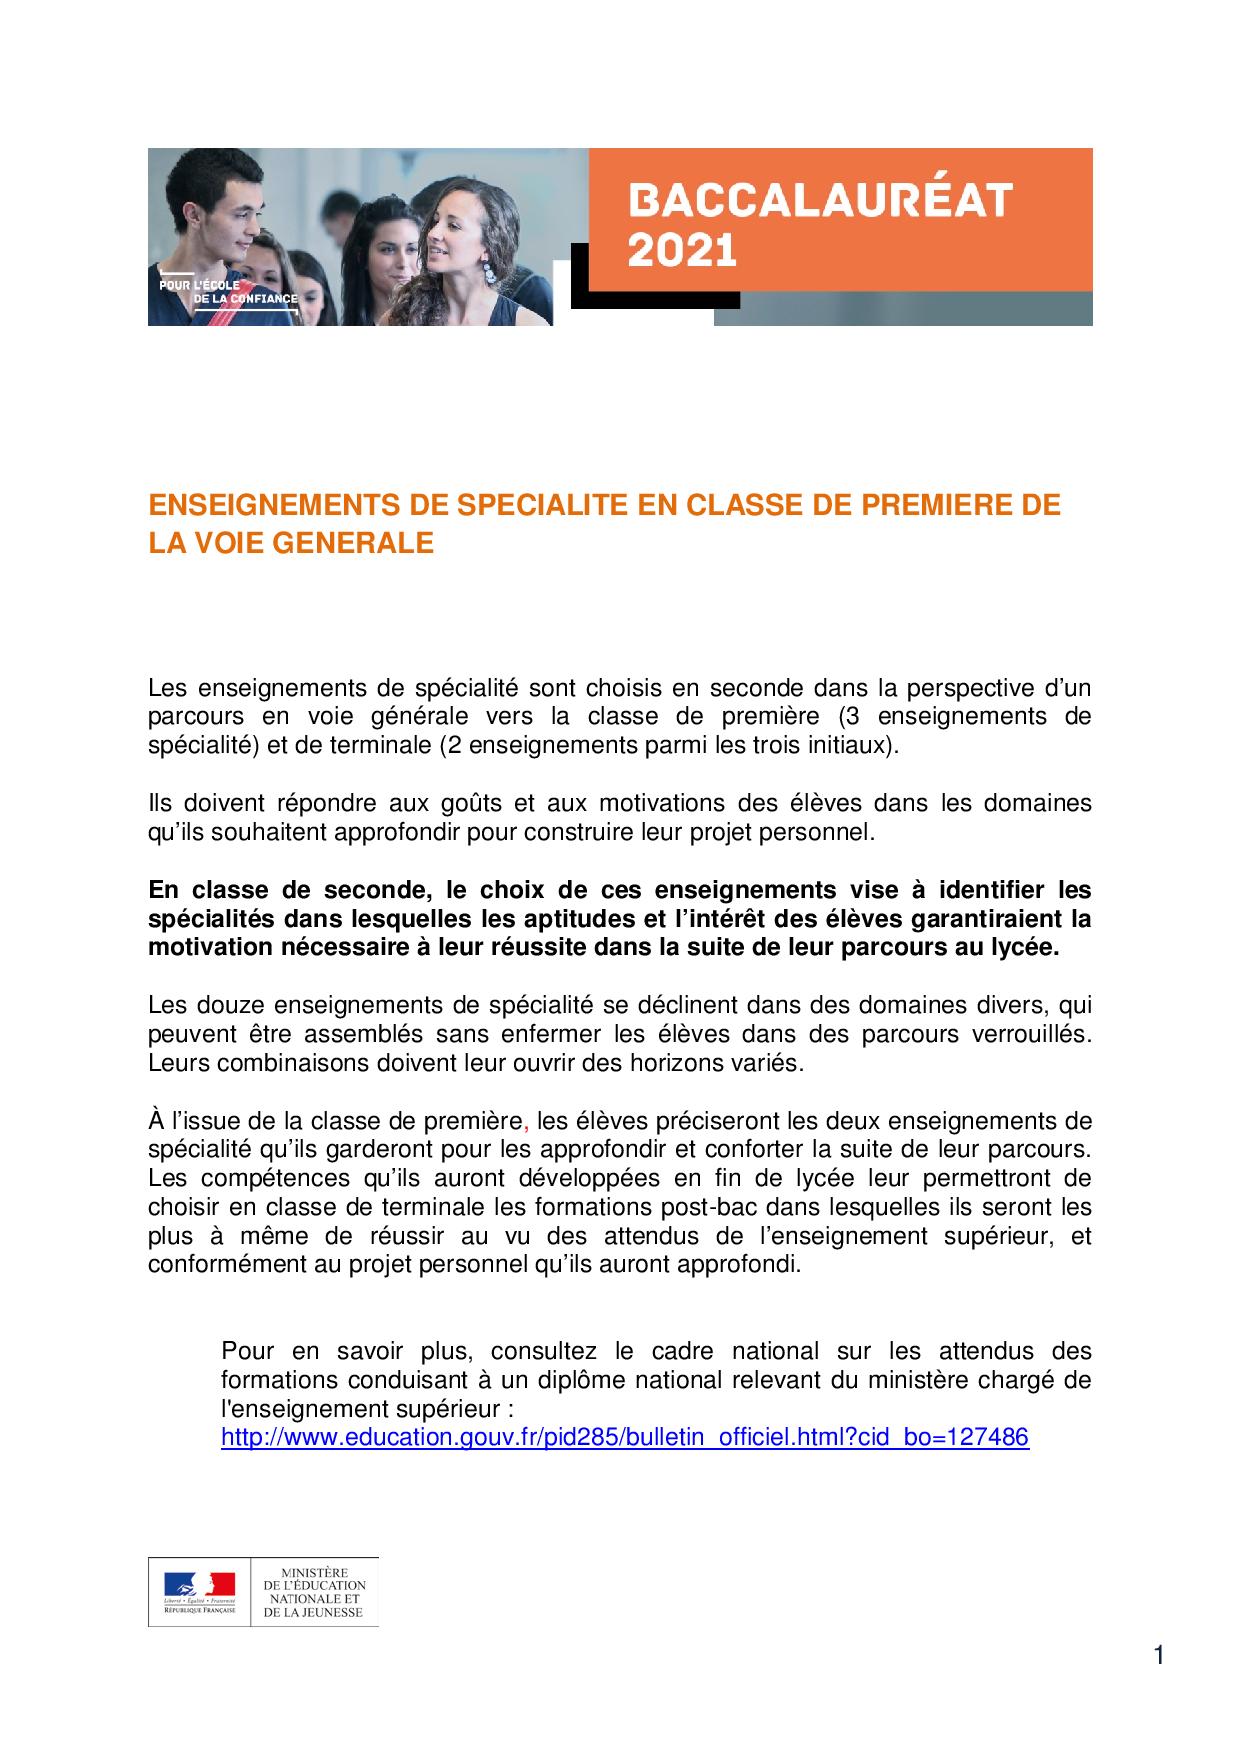 presentation_des_enseignements_de_specialite_de_la_voie_generale_1030181-page-001.jpg